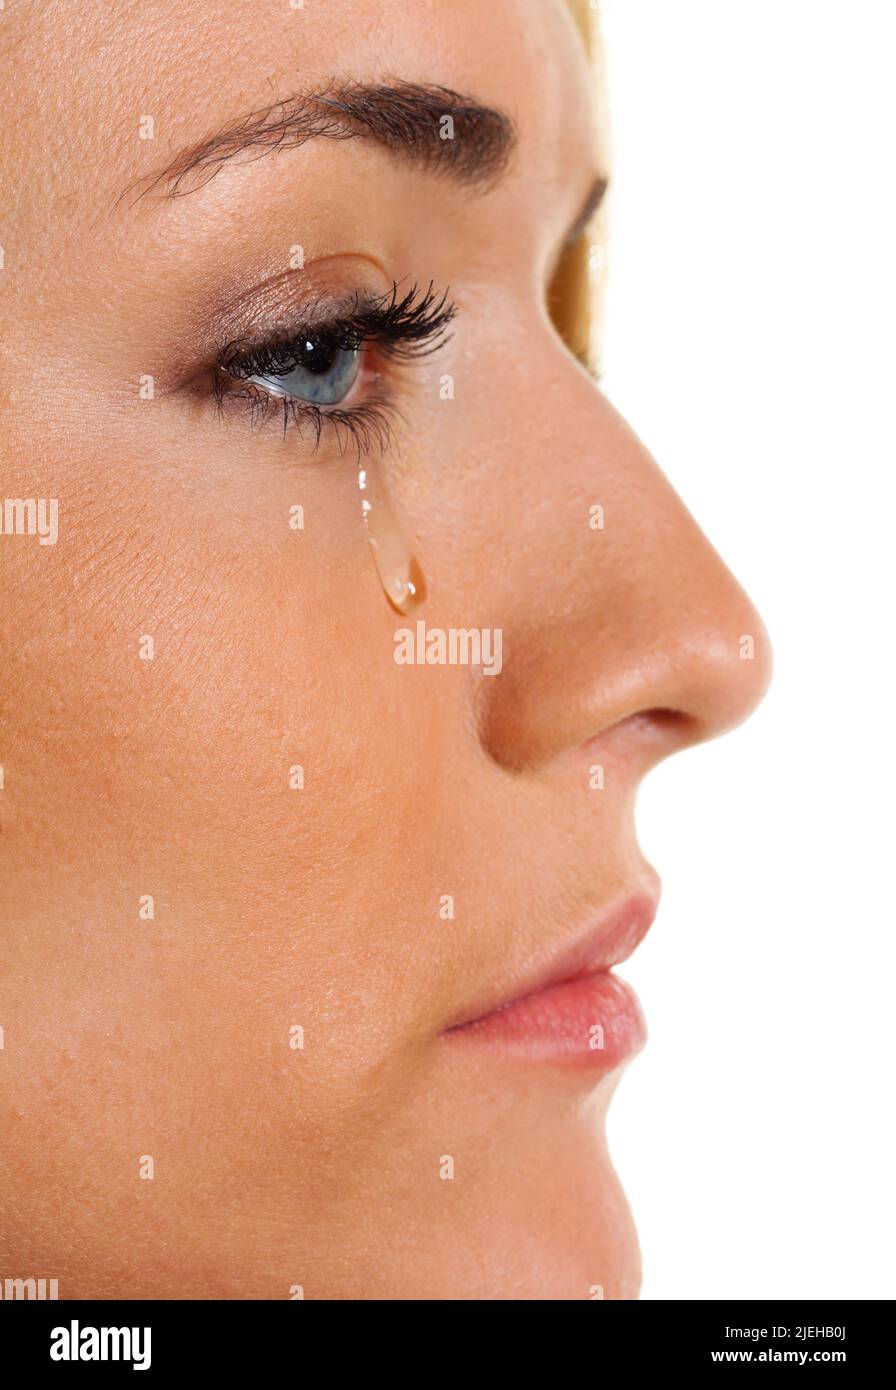 Eine traurige Frau weint Tr sur ne. Symbolphoto Angst, Gewalt, depressione Foto Stock